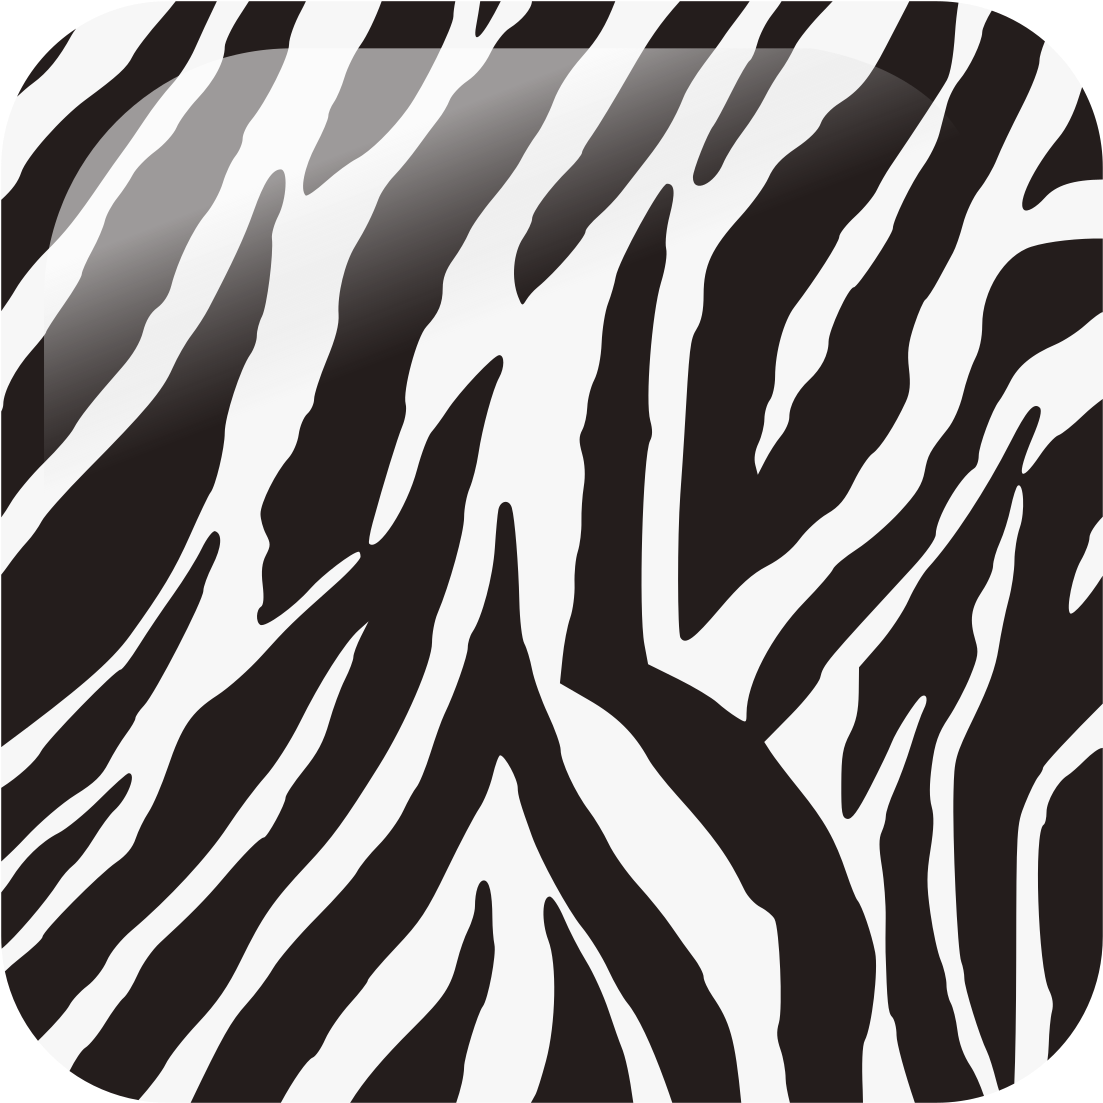 A Close-up Of A Zebra Print